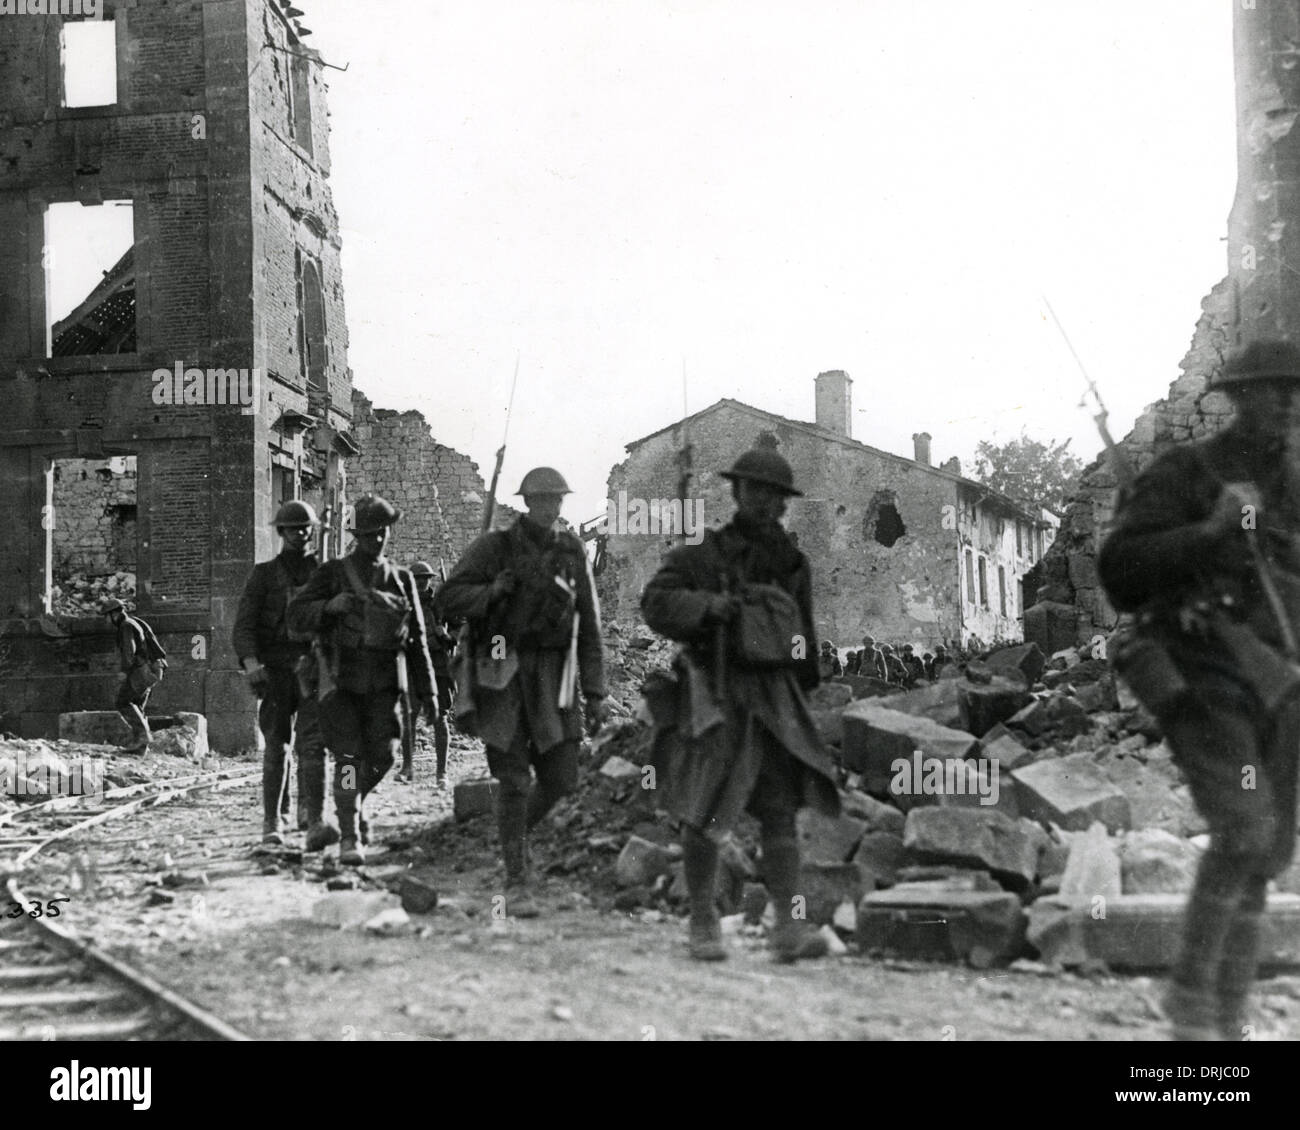 L'infanterie américaine à Varennes-en-argonne, France, WW1 Banque D'Images